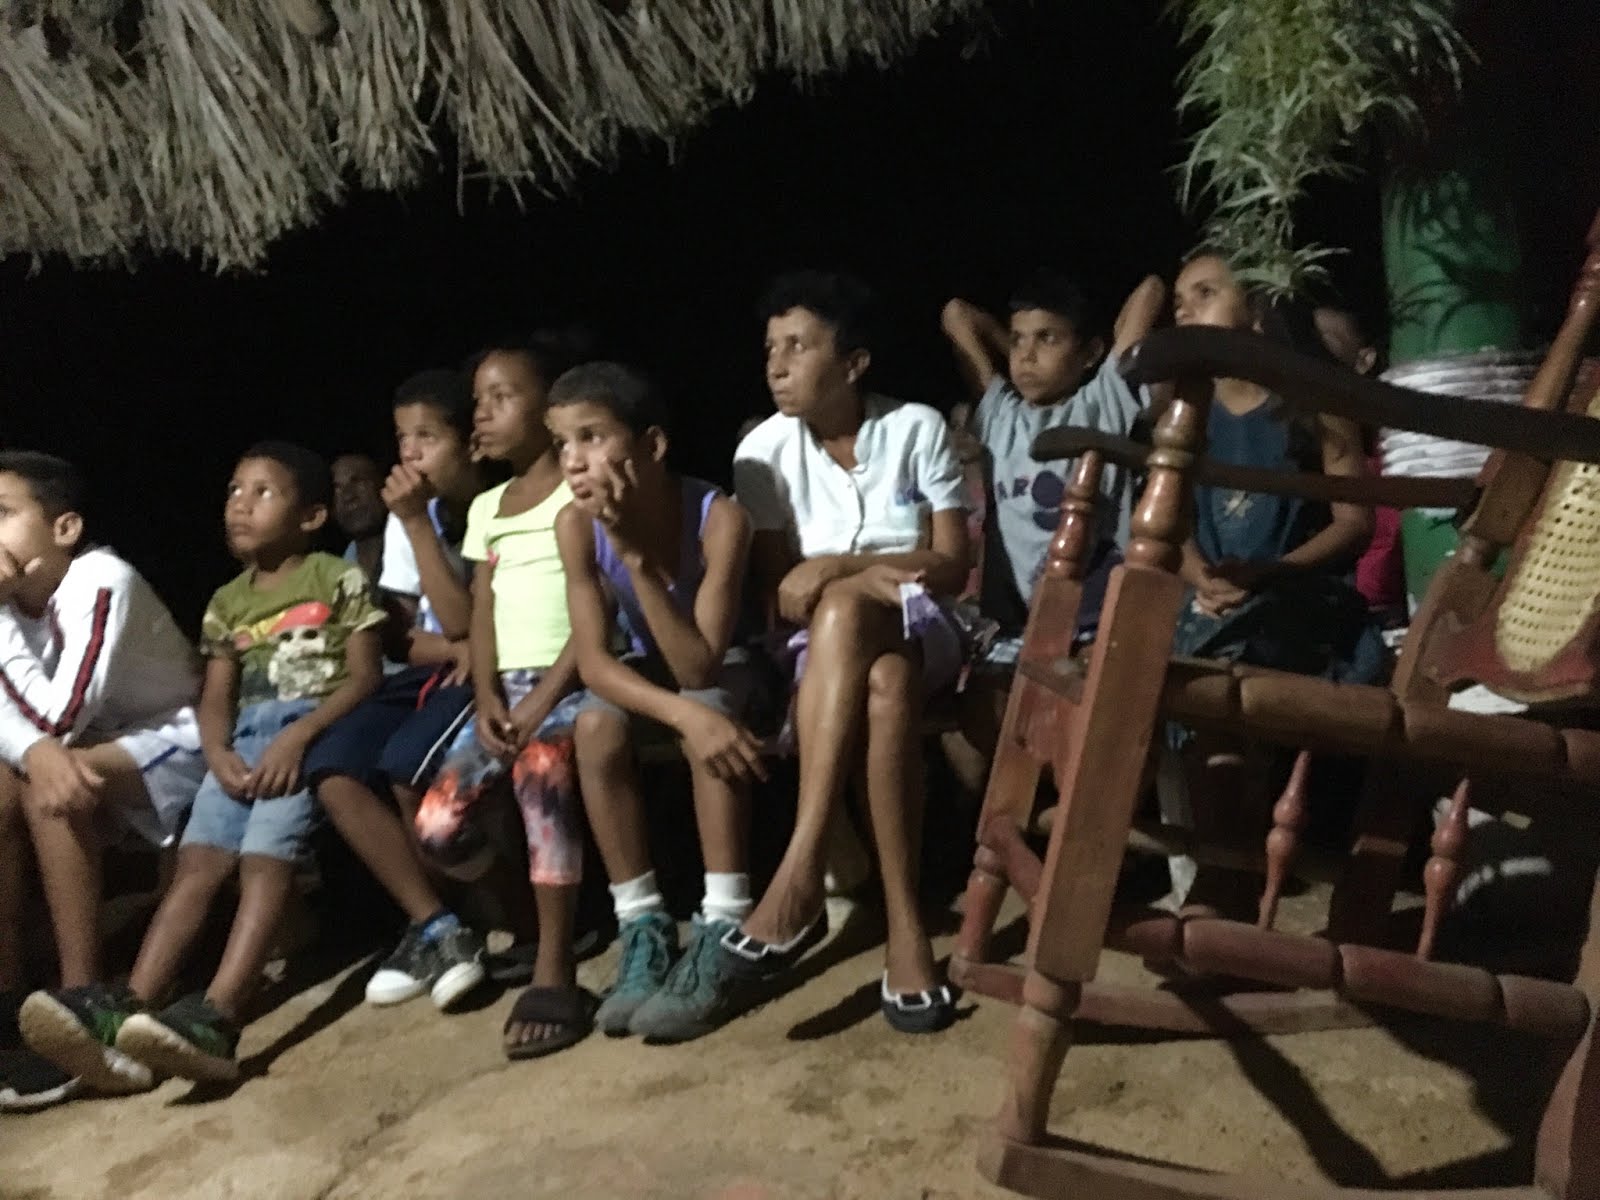 Children in Cuba listening to Jubilee's violin